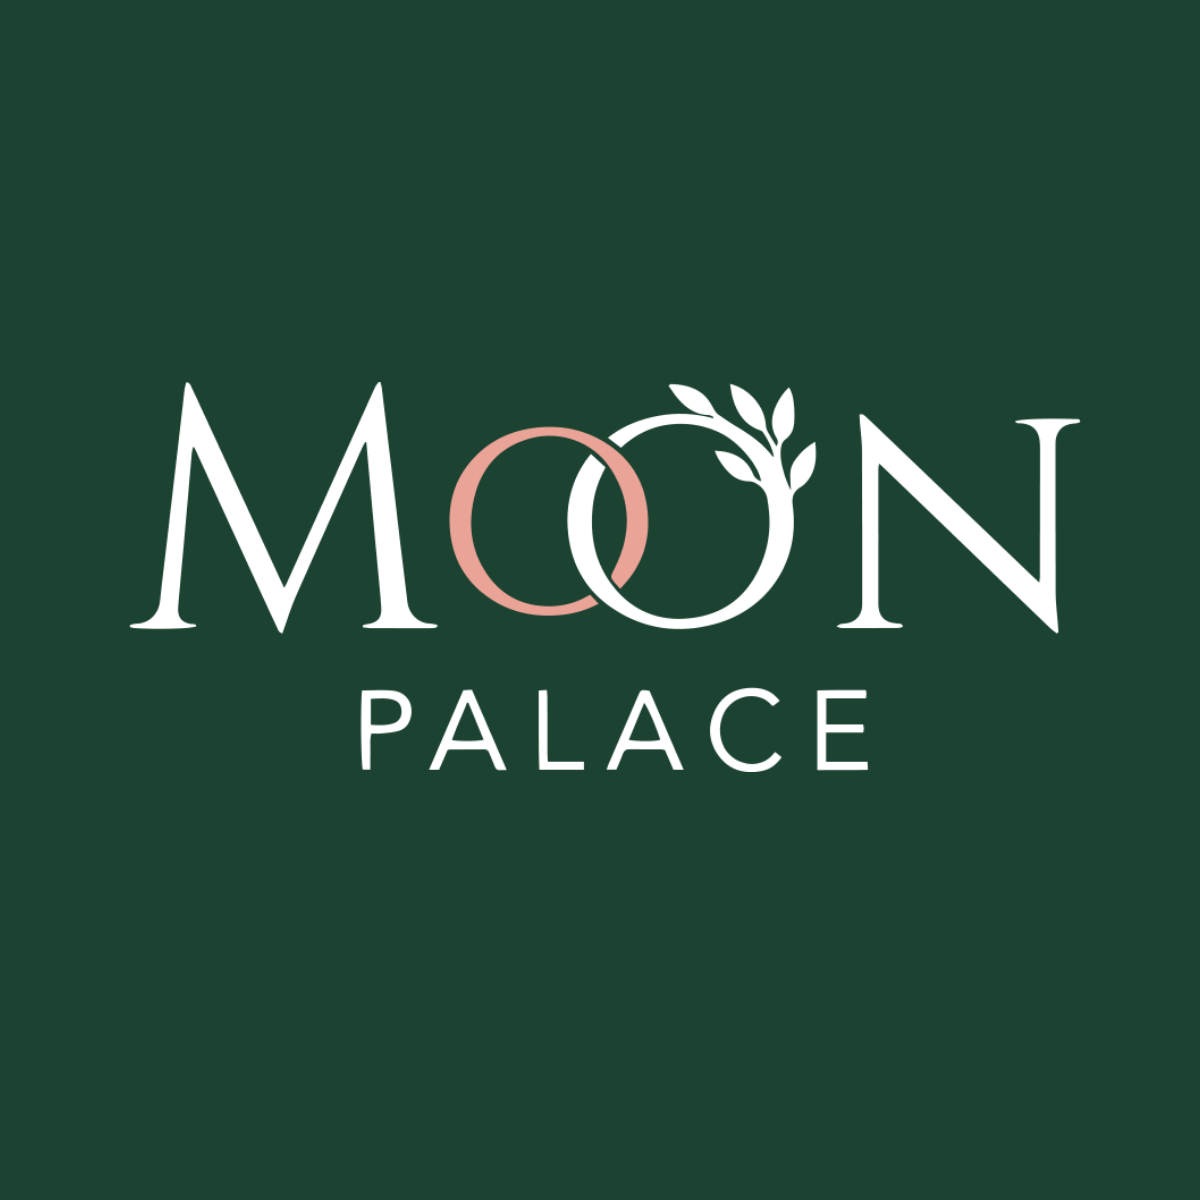 Trung Tâm Hội Nghị Tiệc Cưới Moon Palace